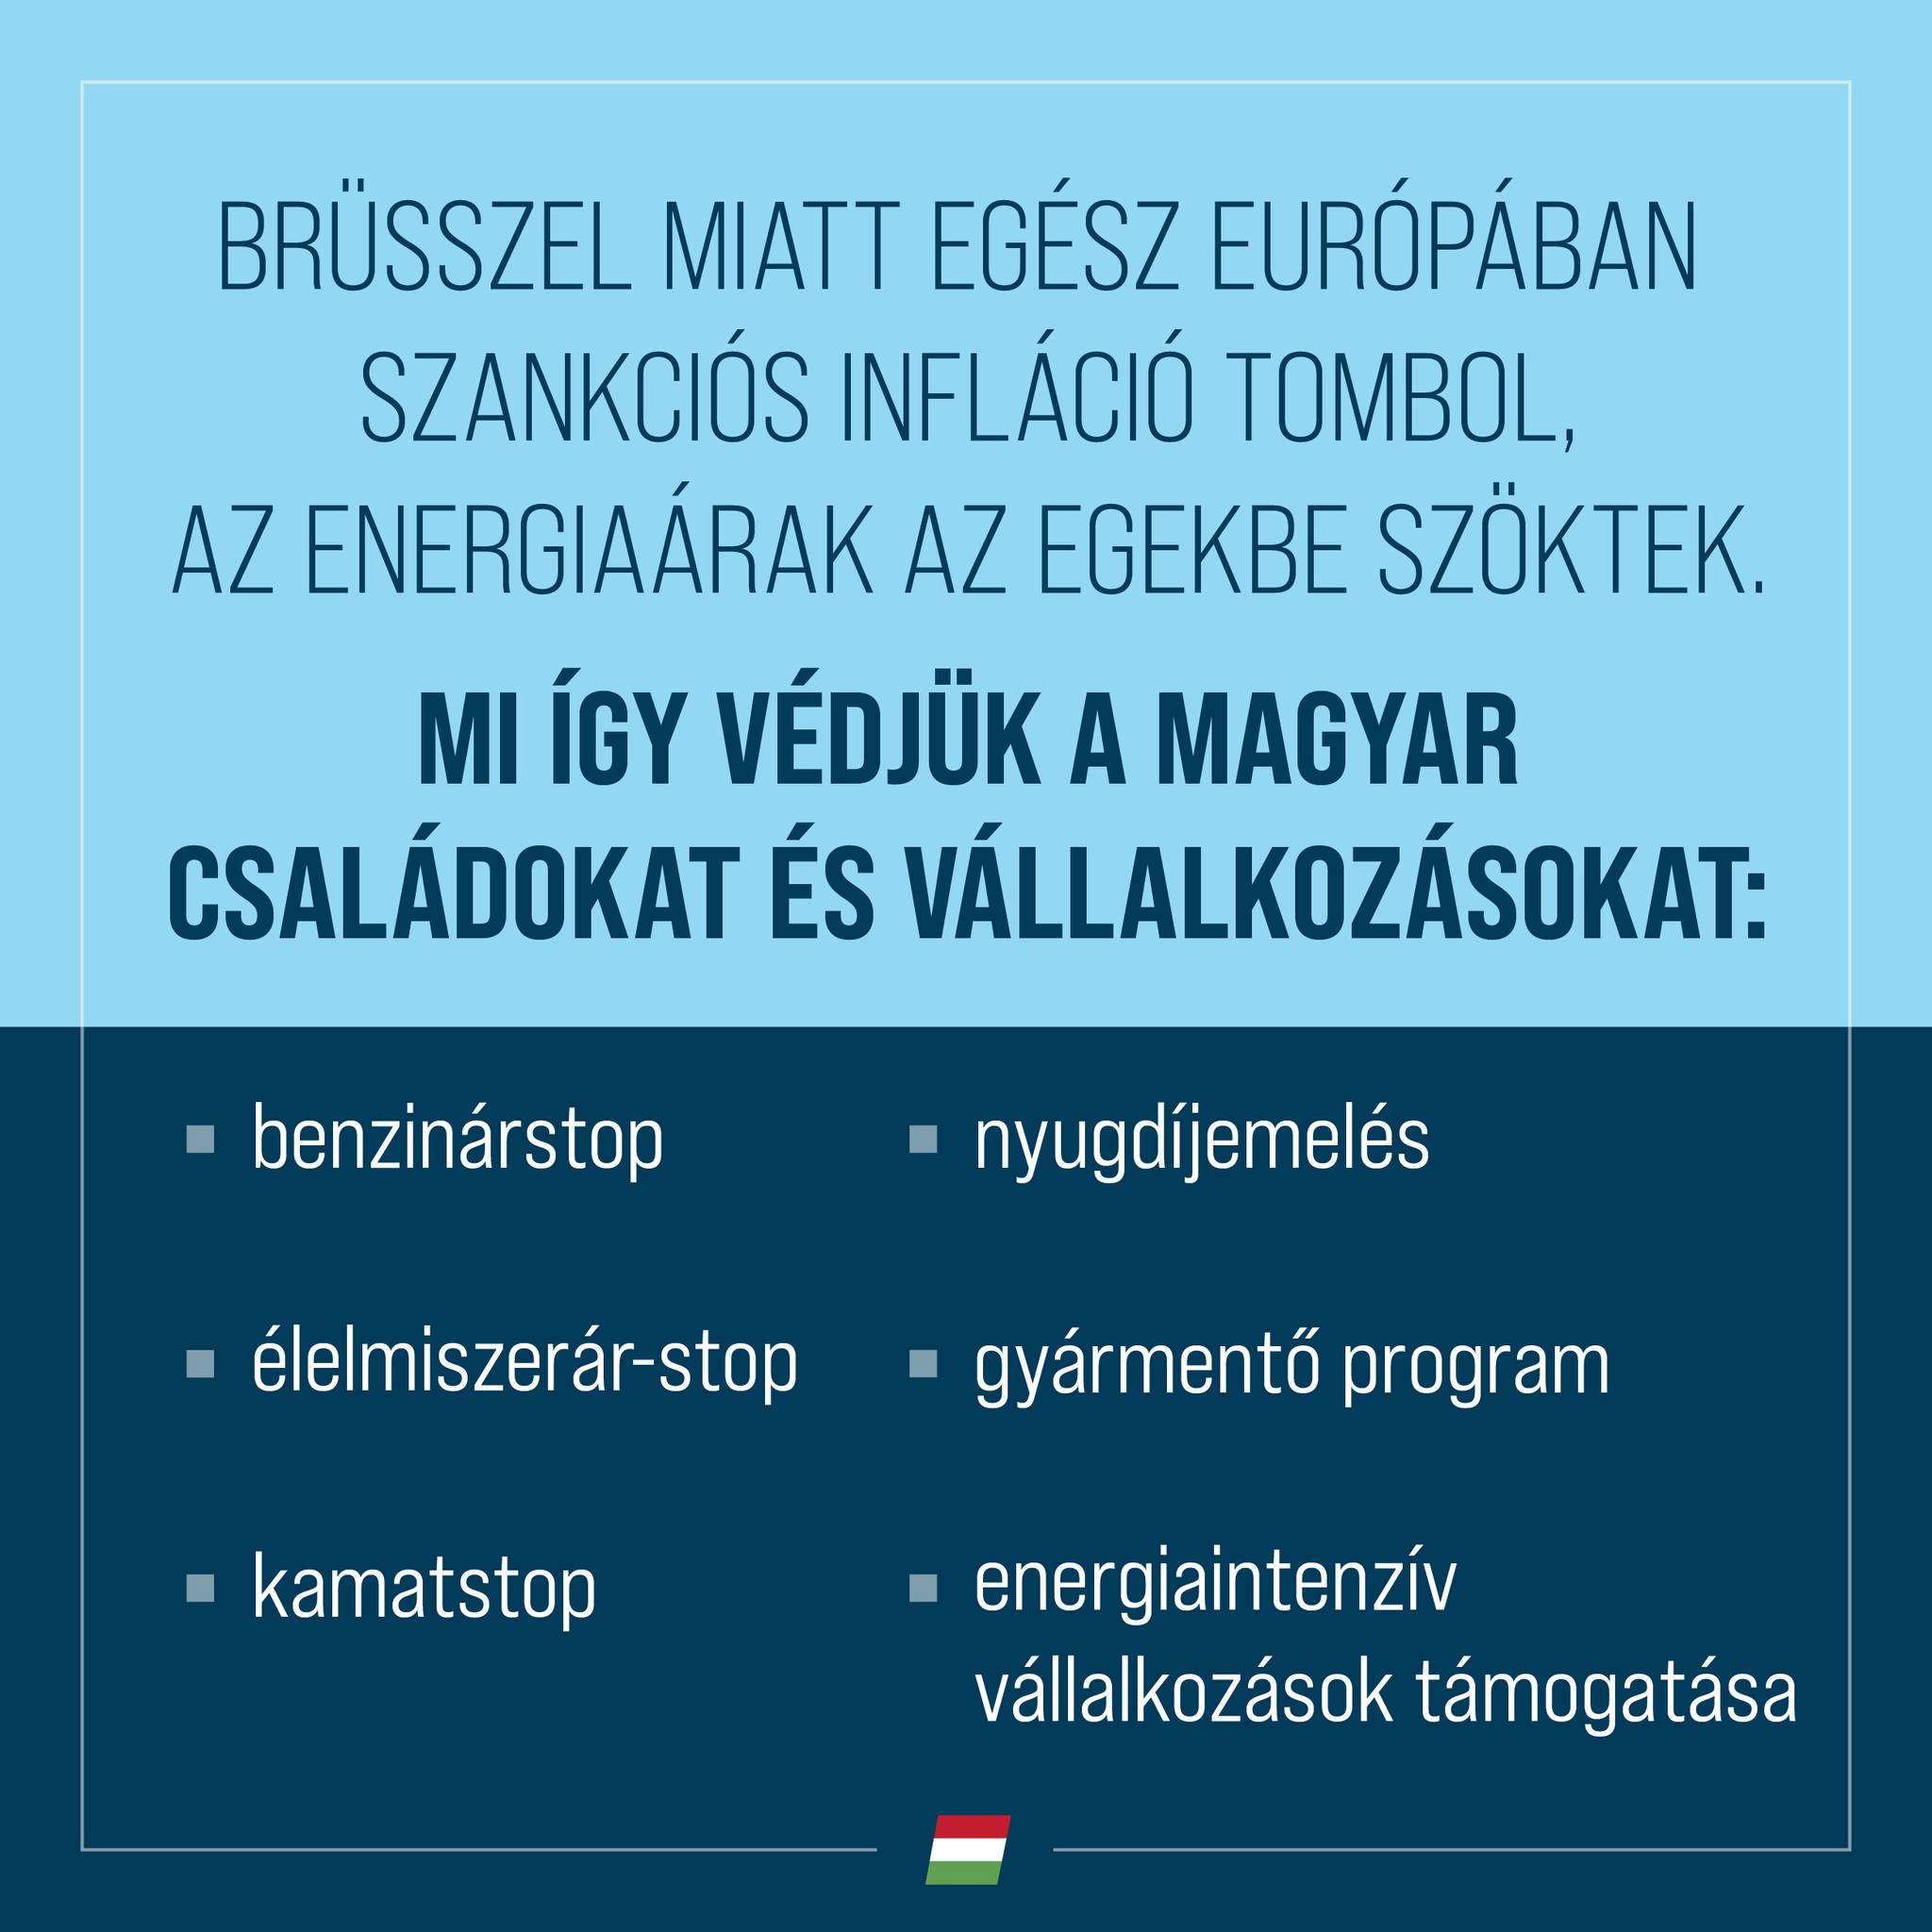 Az a célunk, hogy a háború és a szankciók negatív hatásai ellenére fenntartsuk a magyar gazdaság növekedését.